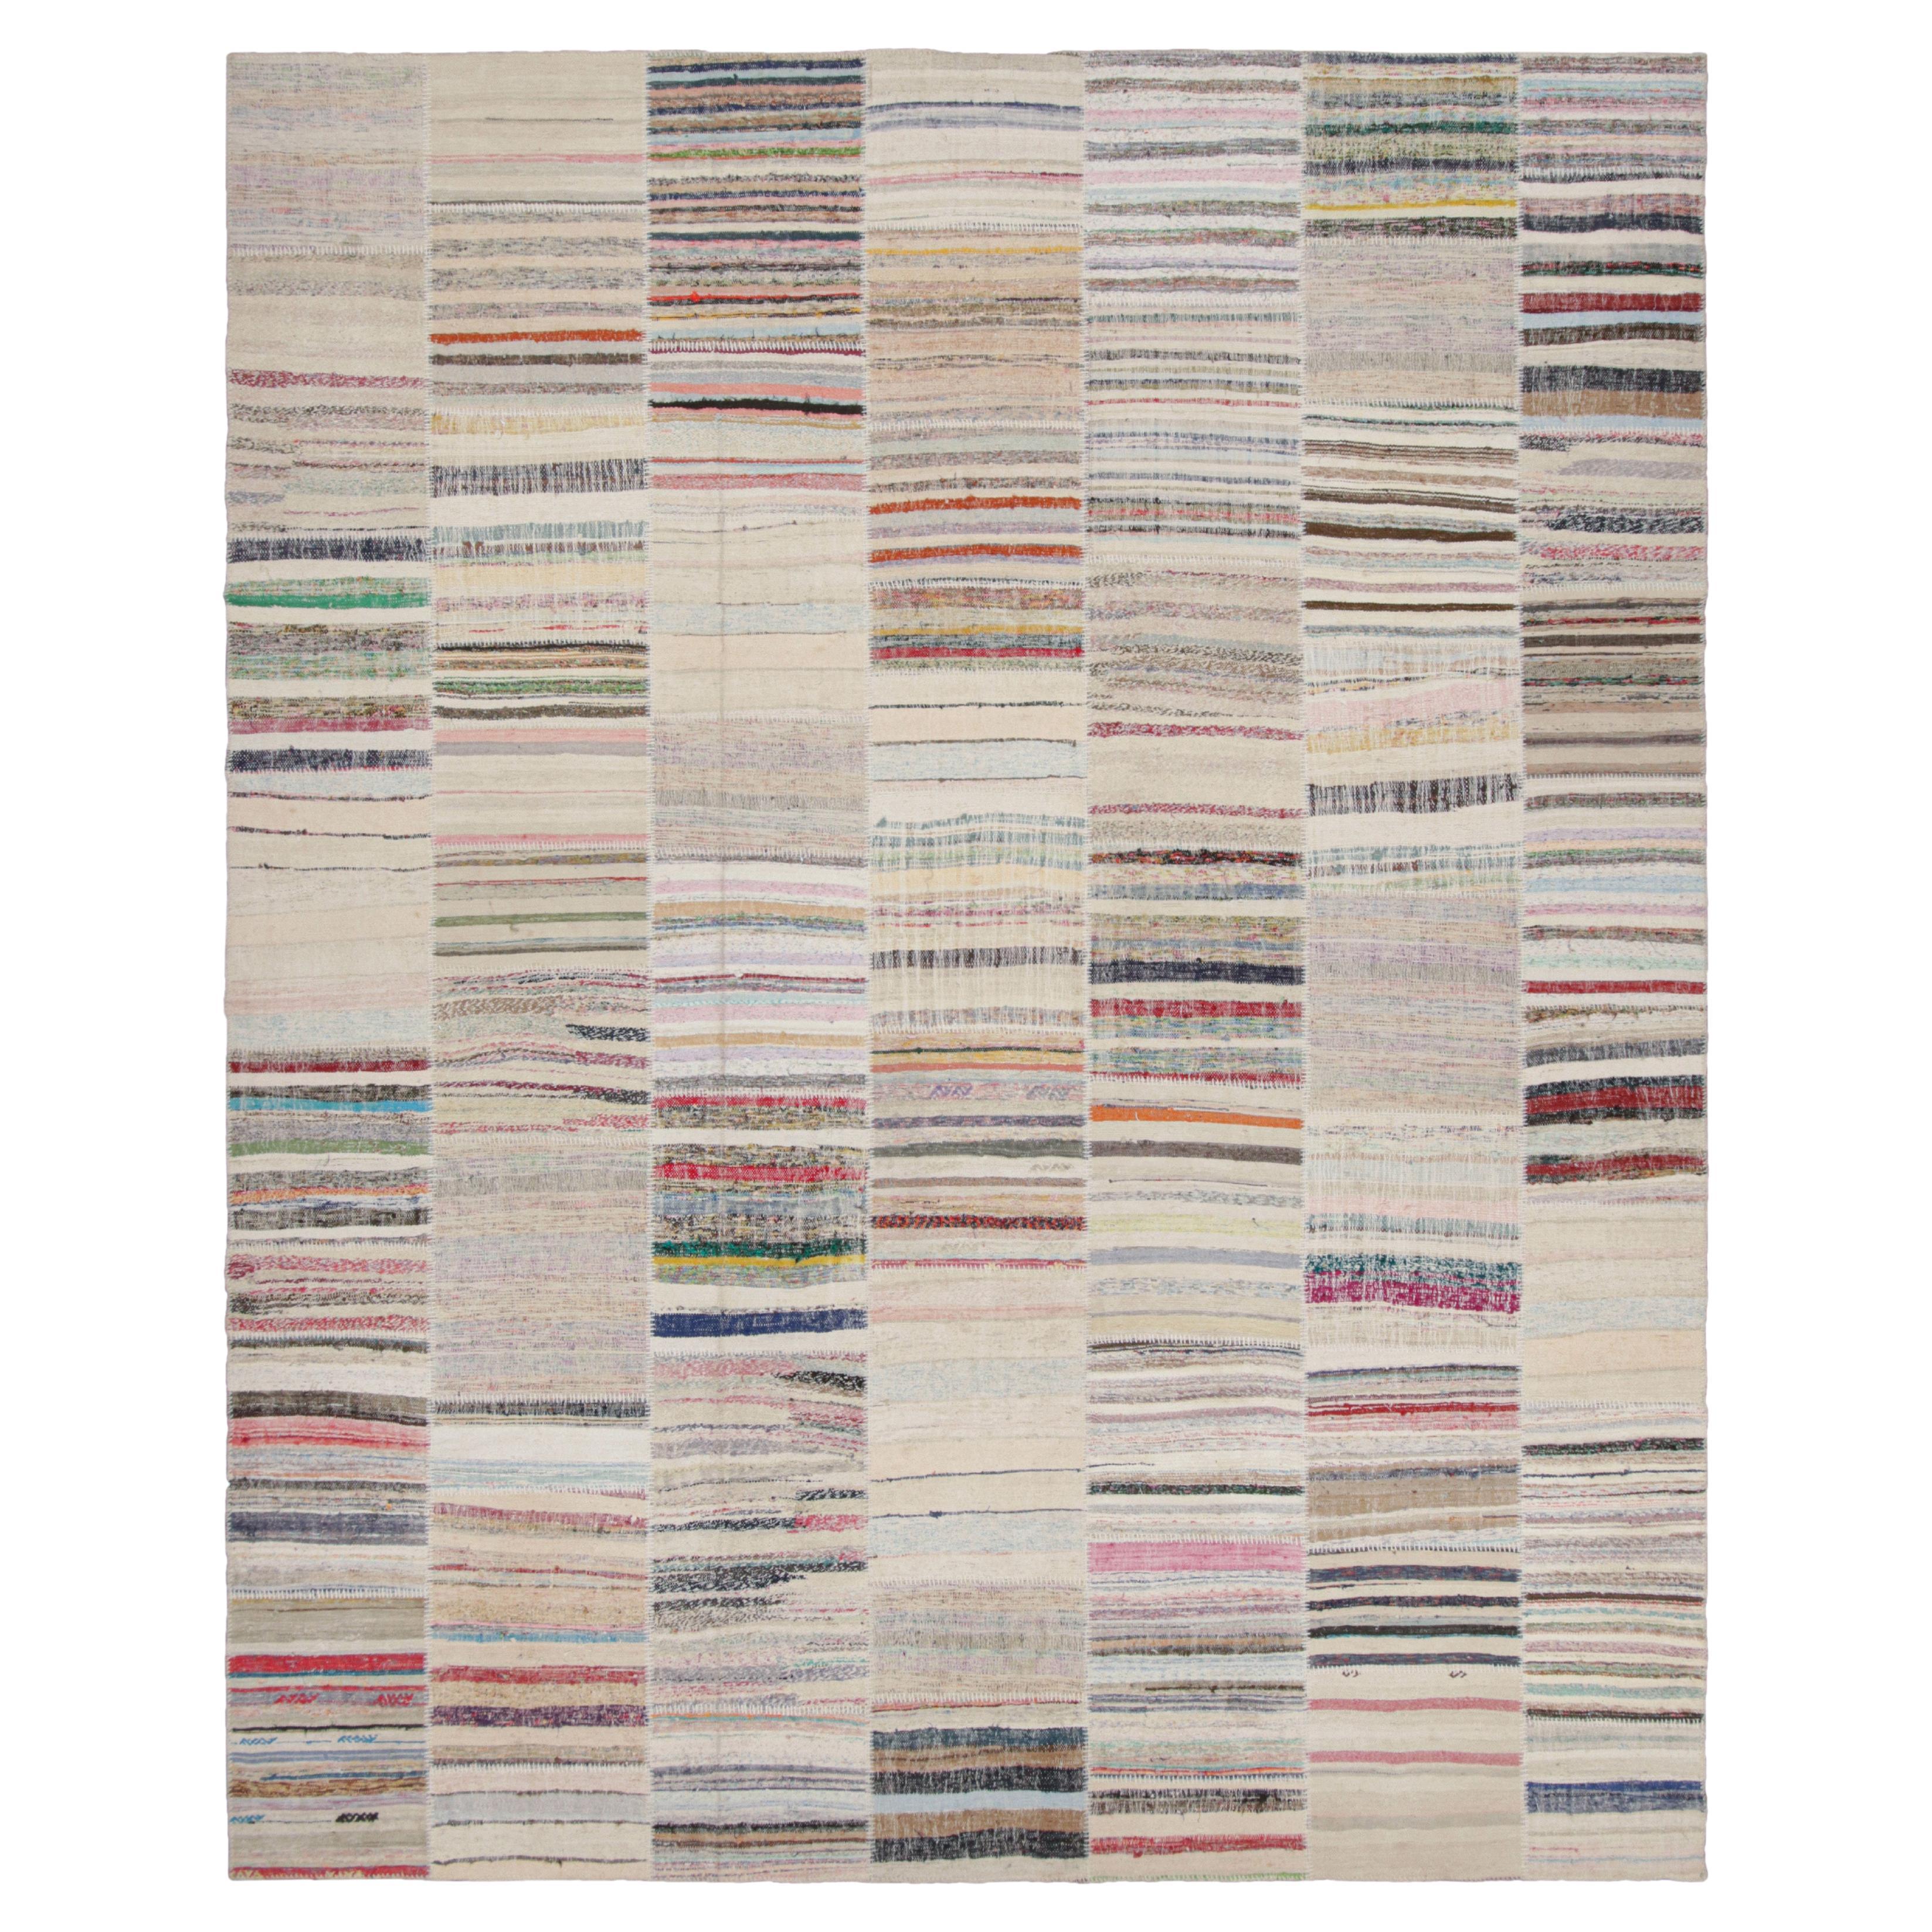 Rug & Kilim's Modern Patchwork Kilim Rug in Gray Multi-Color Stripe Pattern